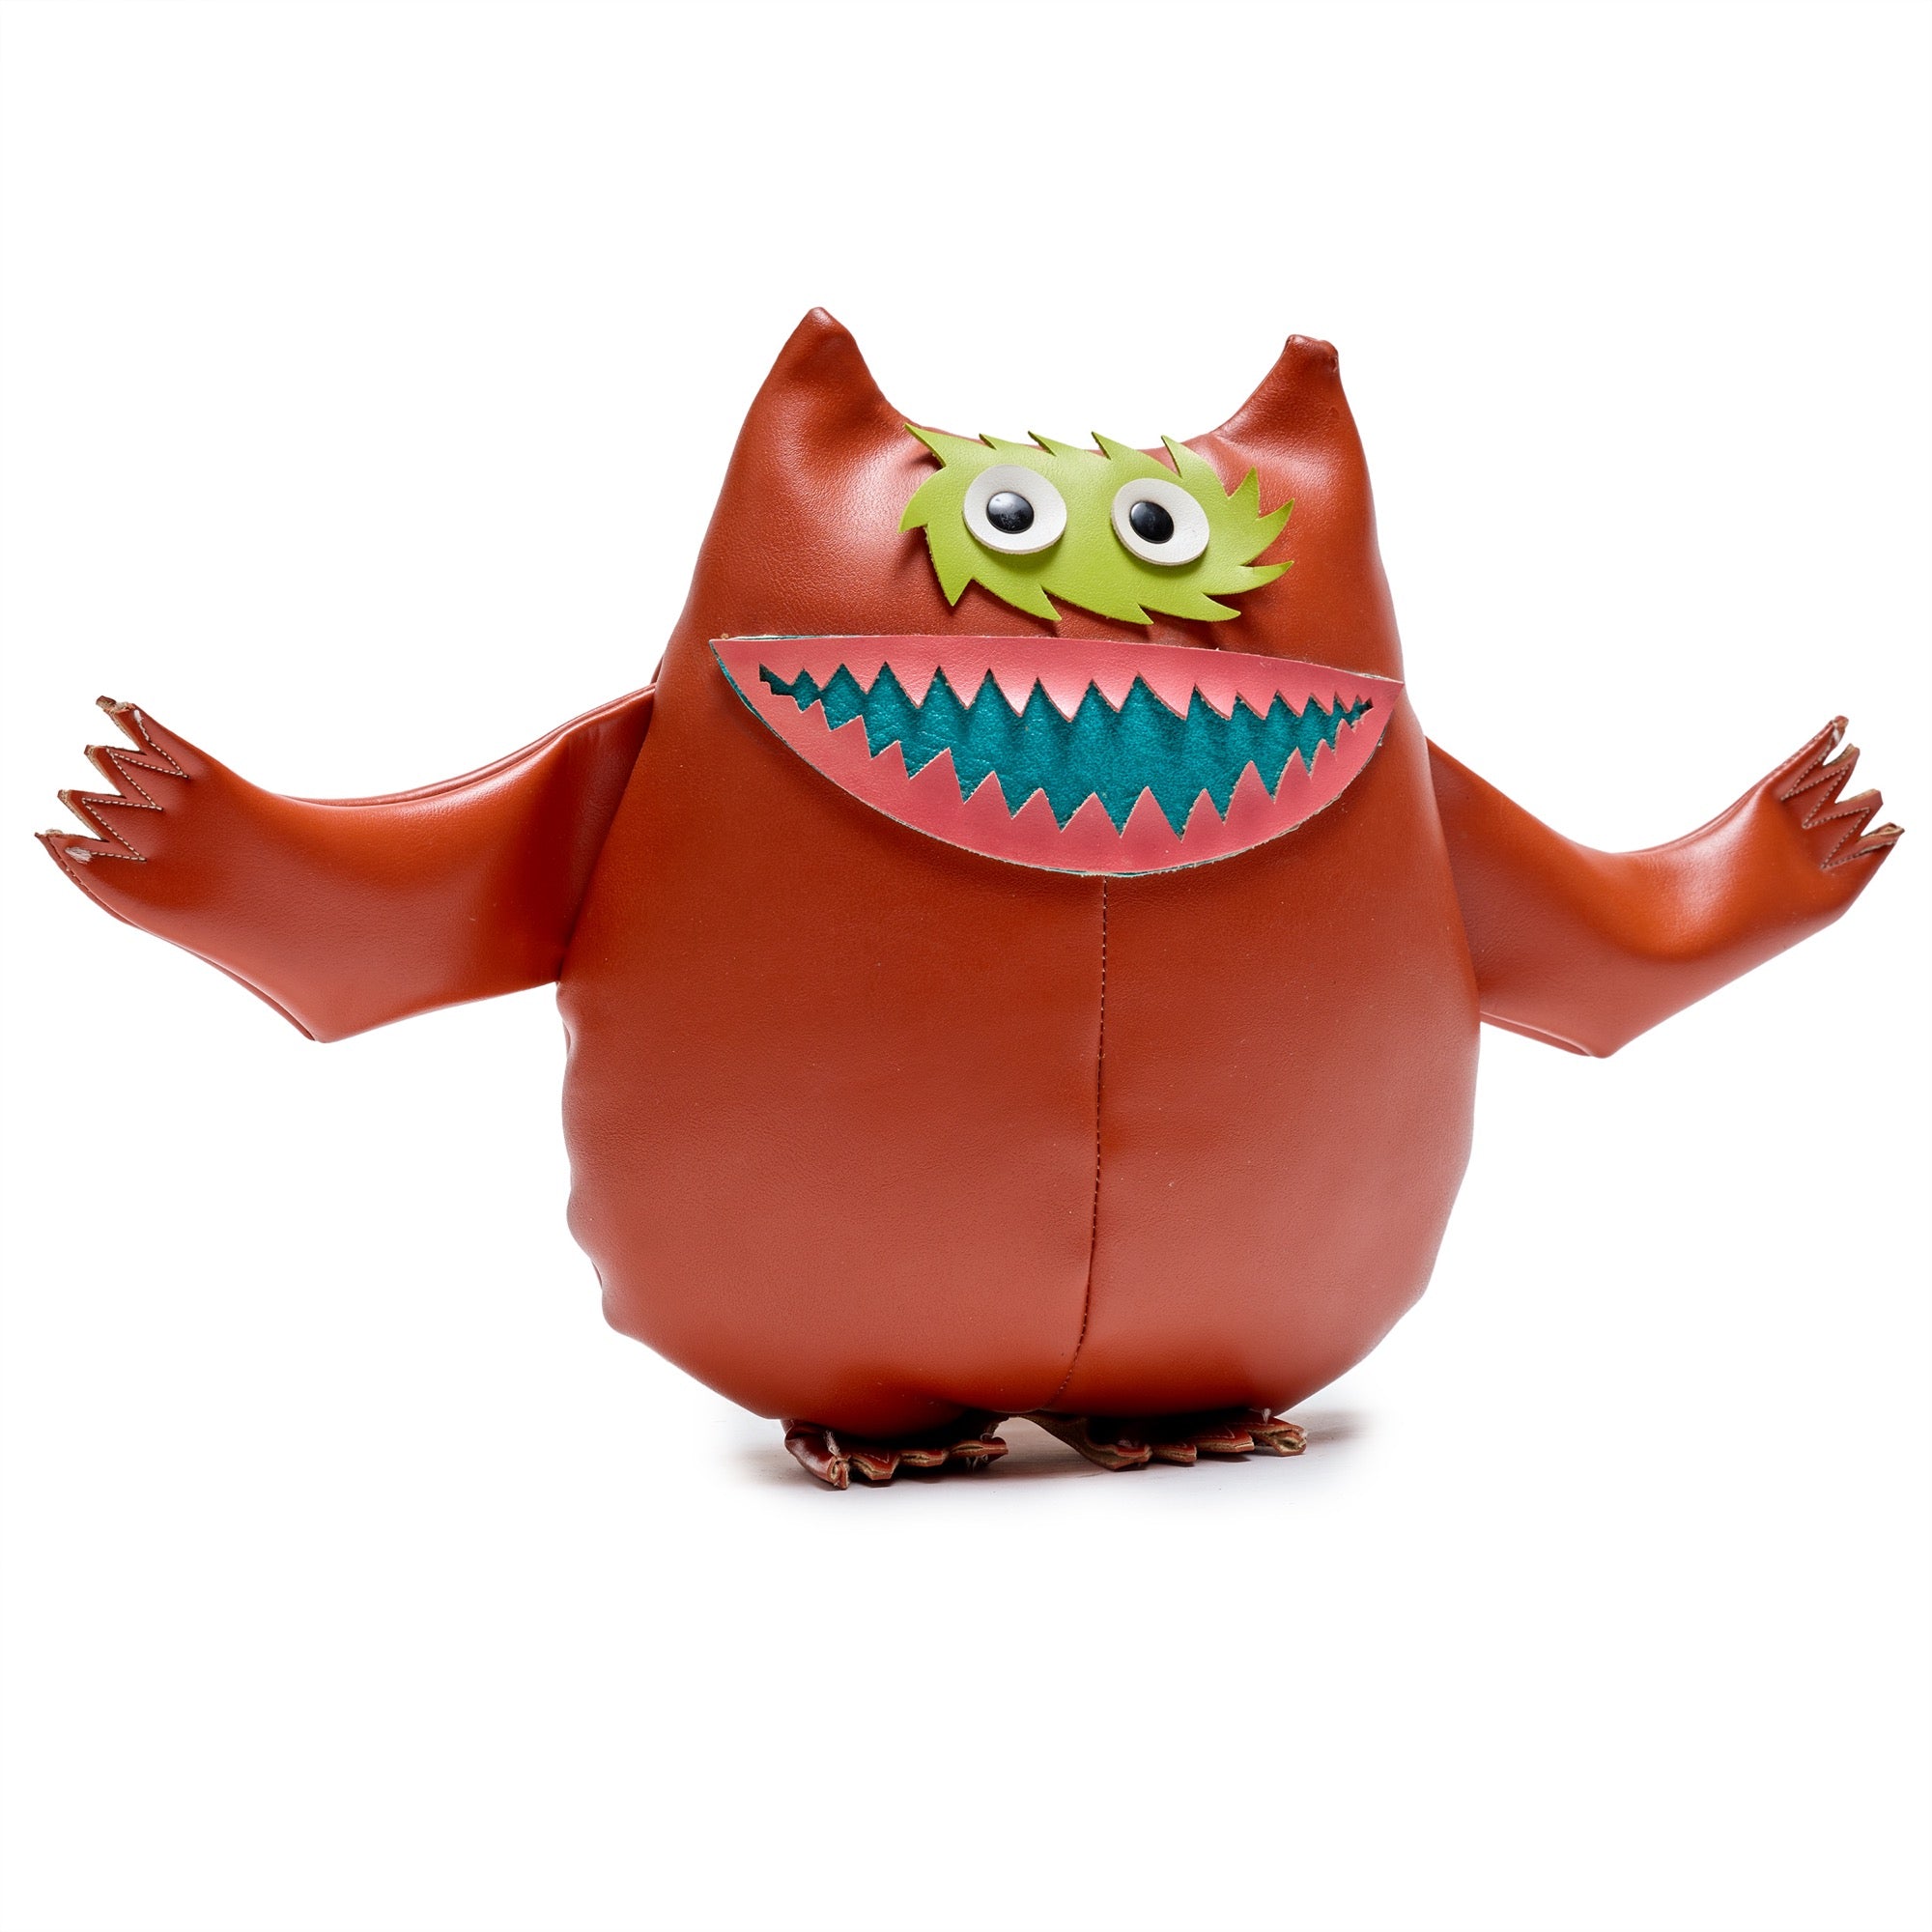 Original "Nauga" Monster for Naugahyde, 1970s